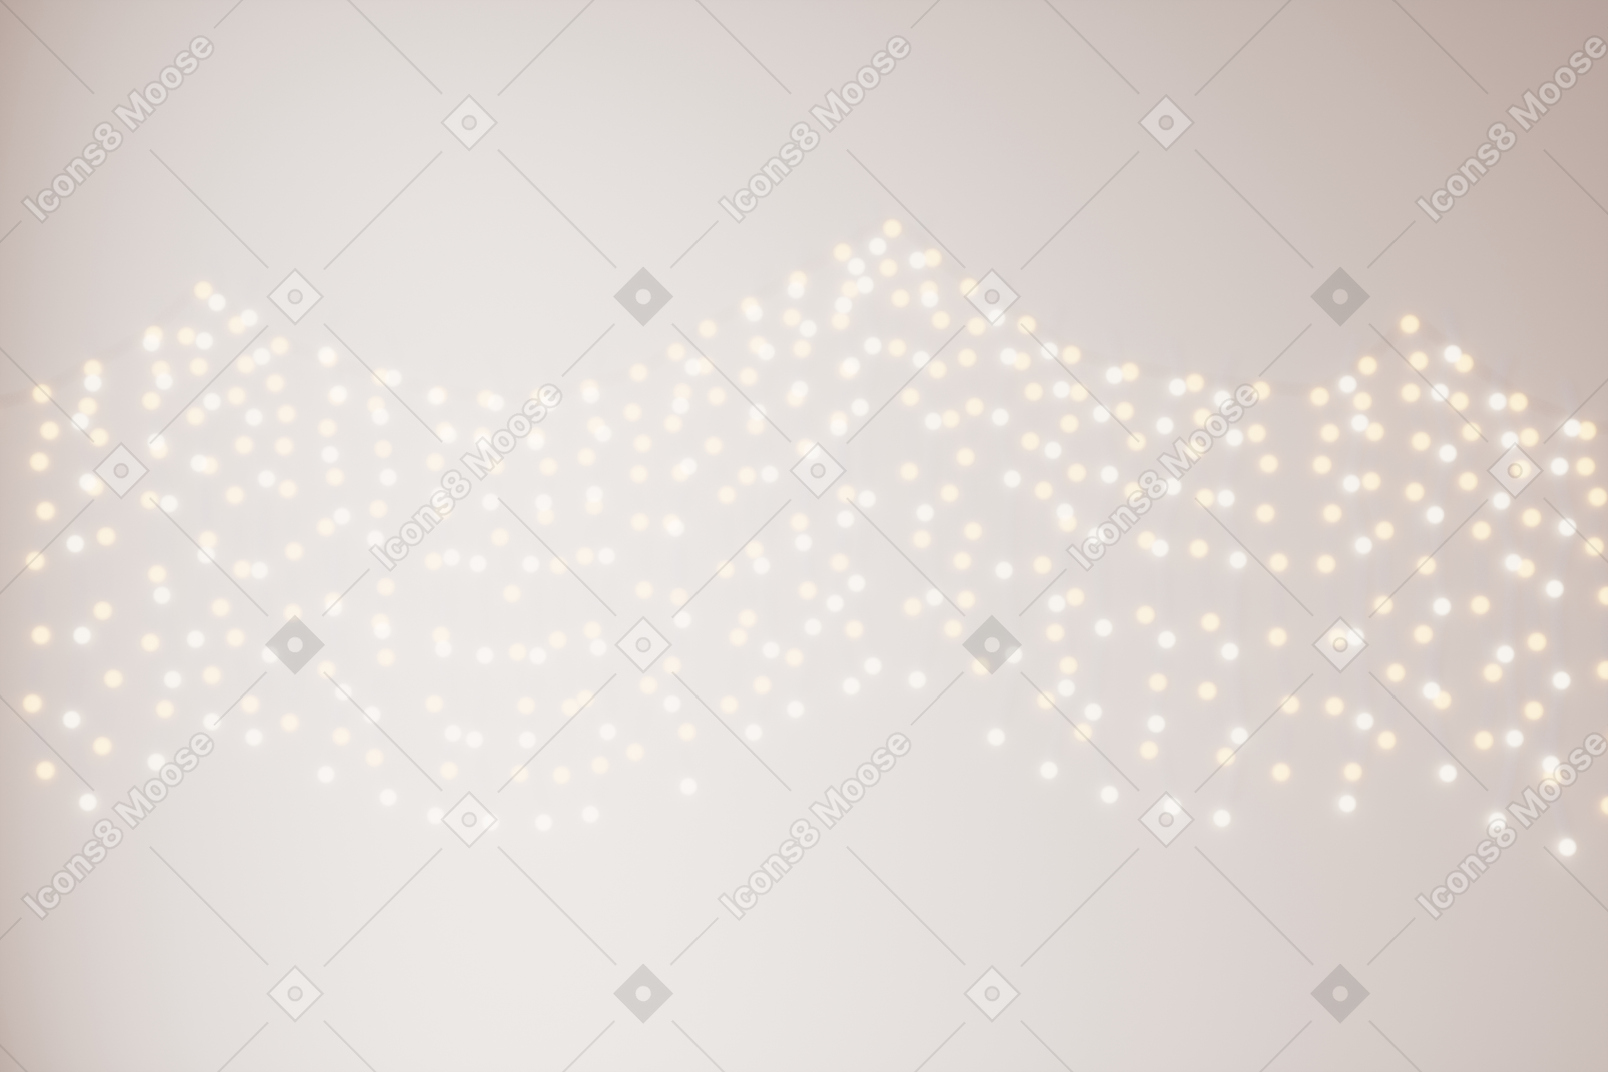 Luces de hadas borrosas en una pared blanca